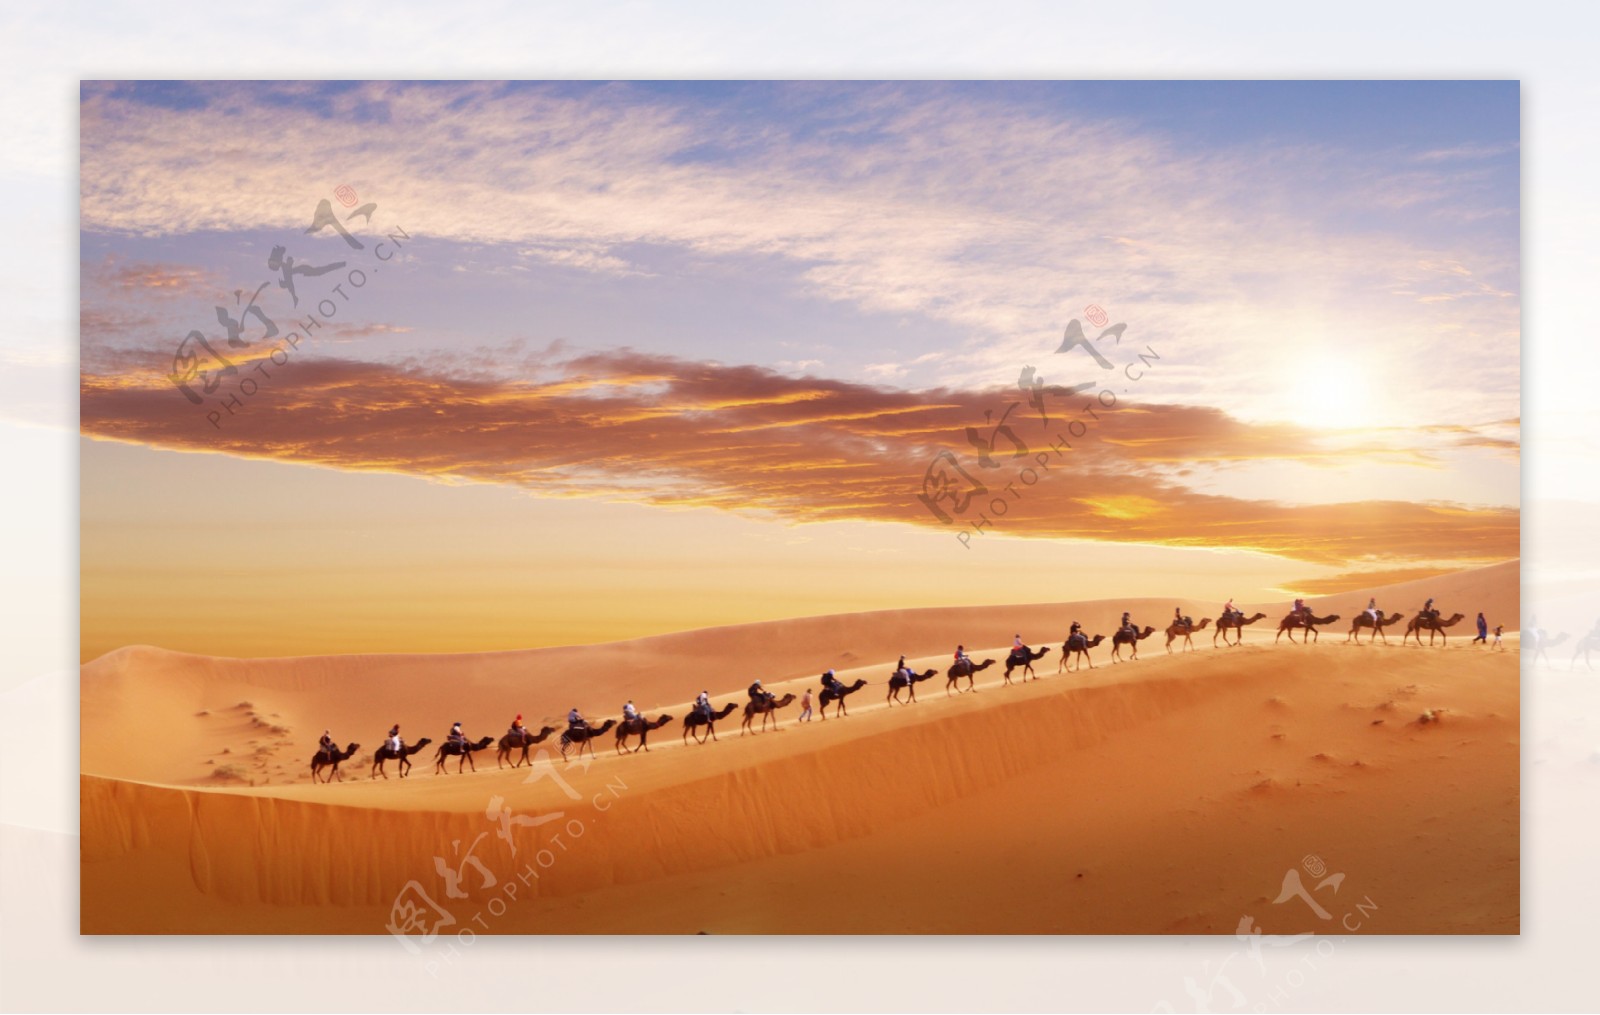 沙漠骆驼团队